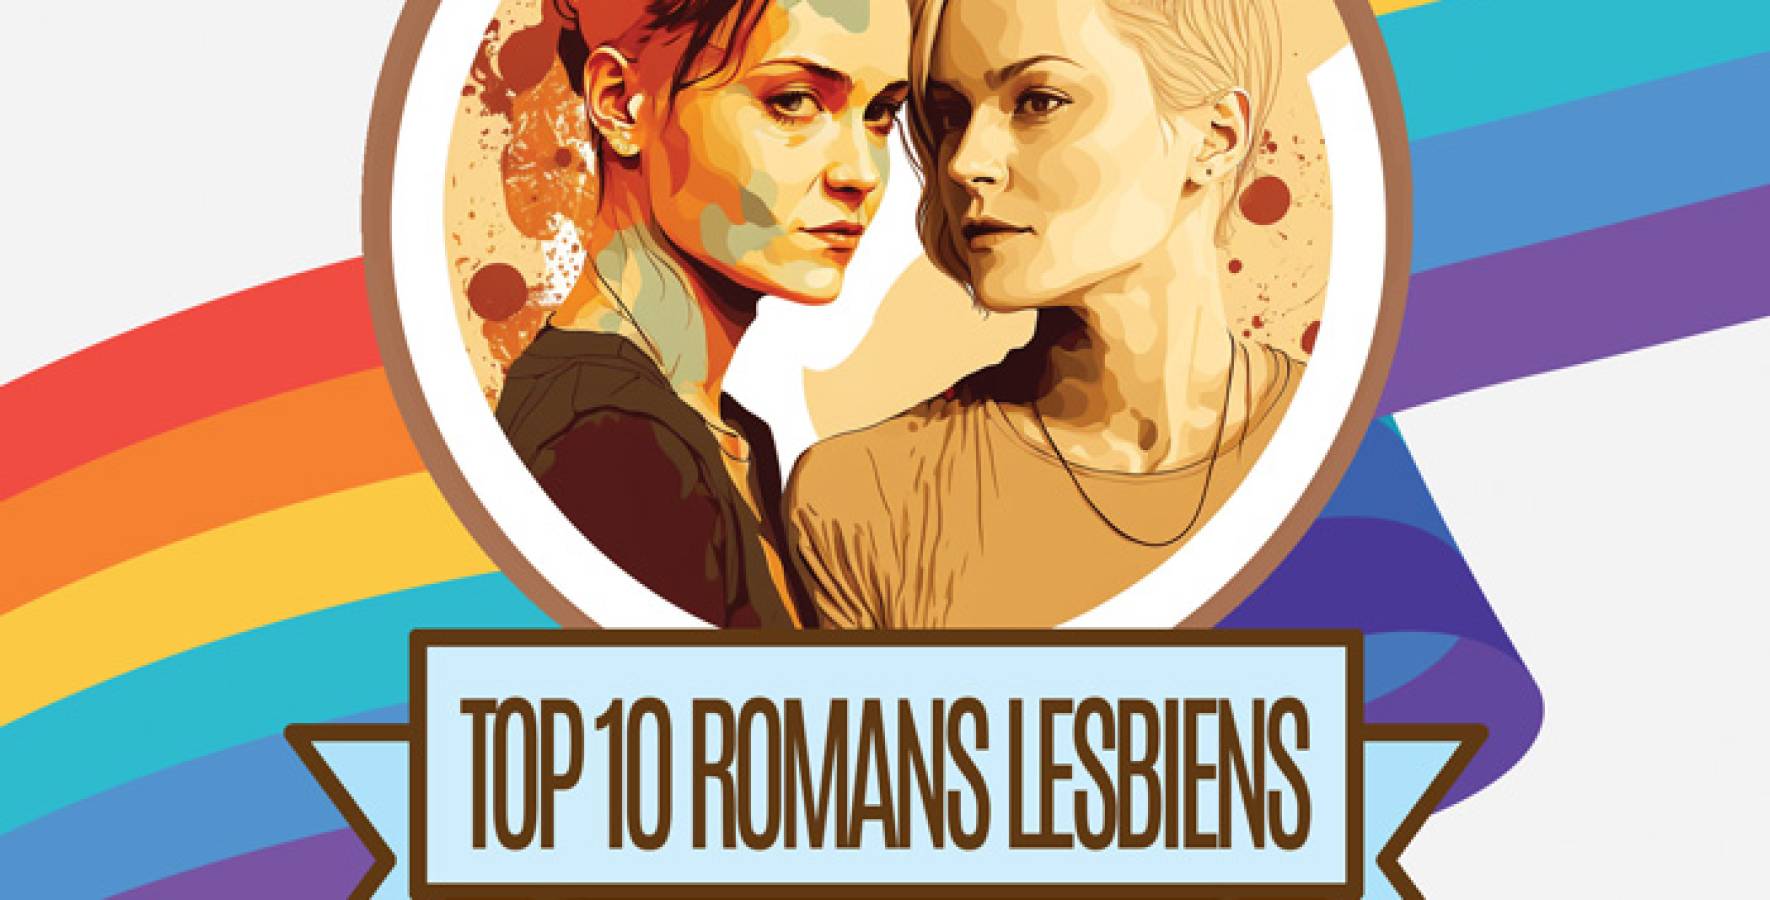 Top 10 des meilleurs romans lesbiens 2022 - 2023